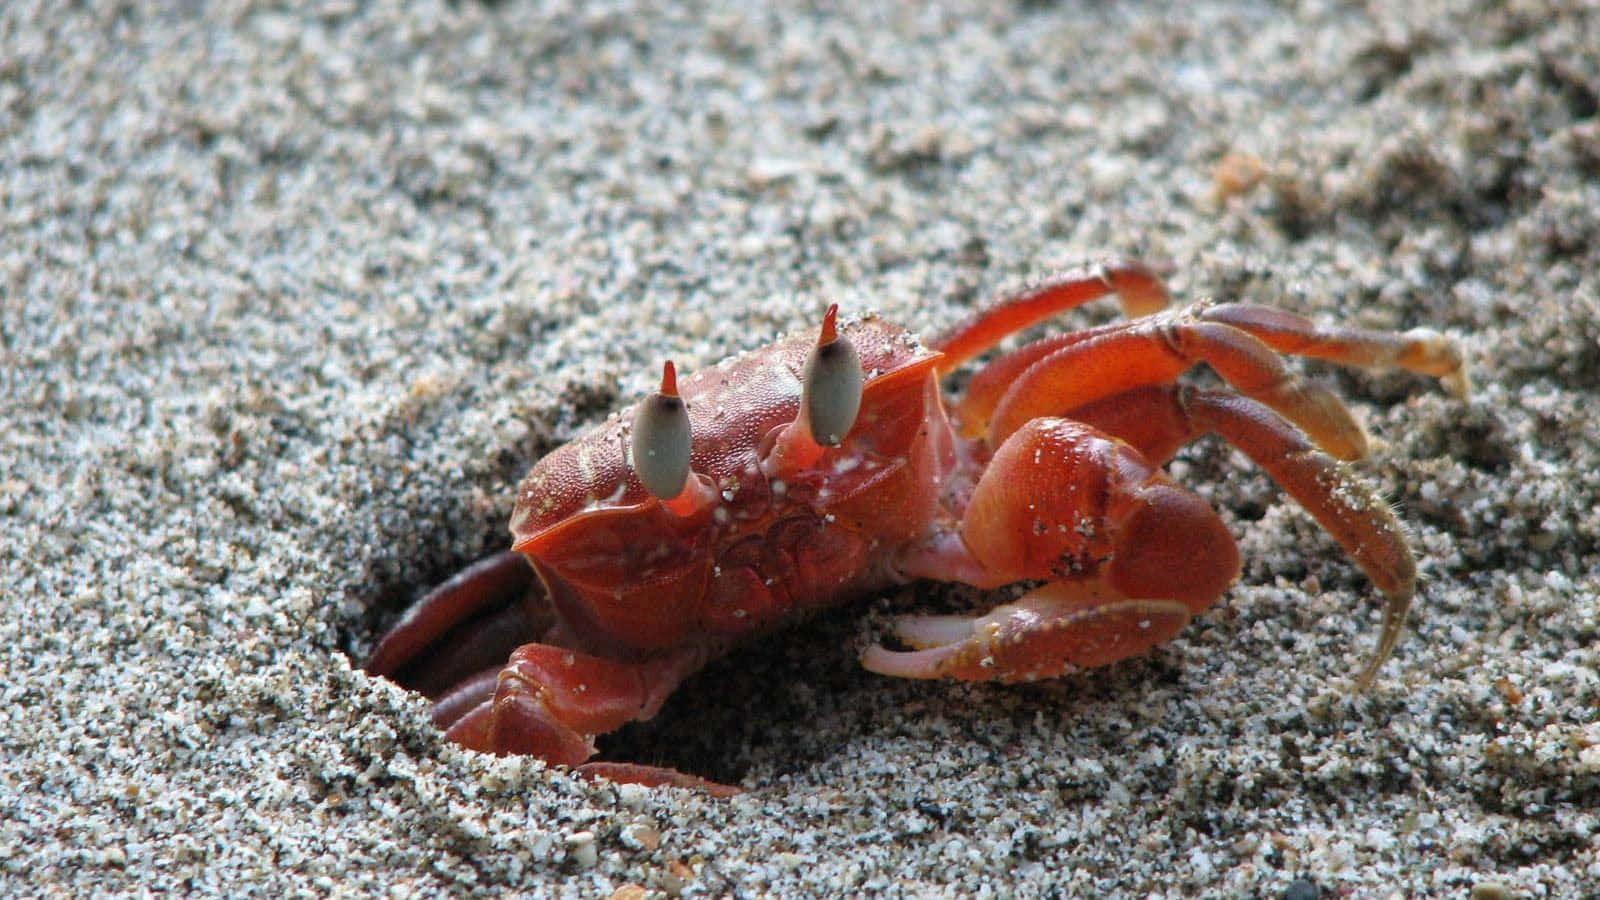 A close up of a bright orange fiddler crab